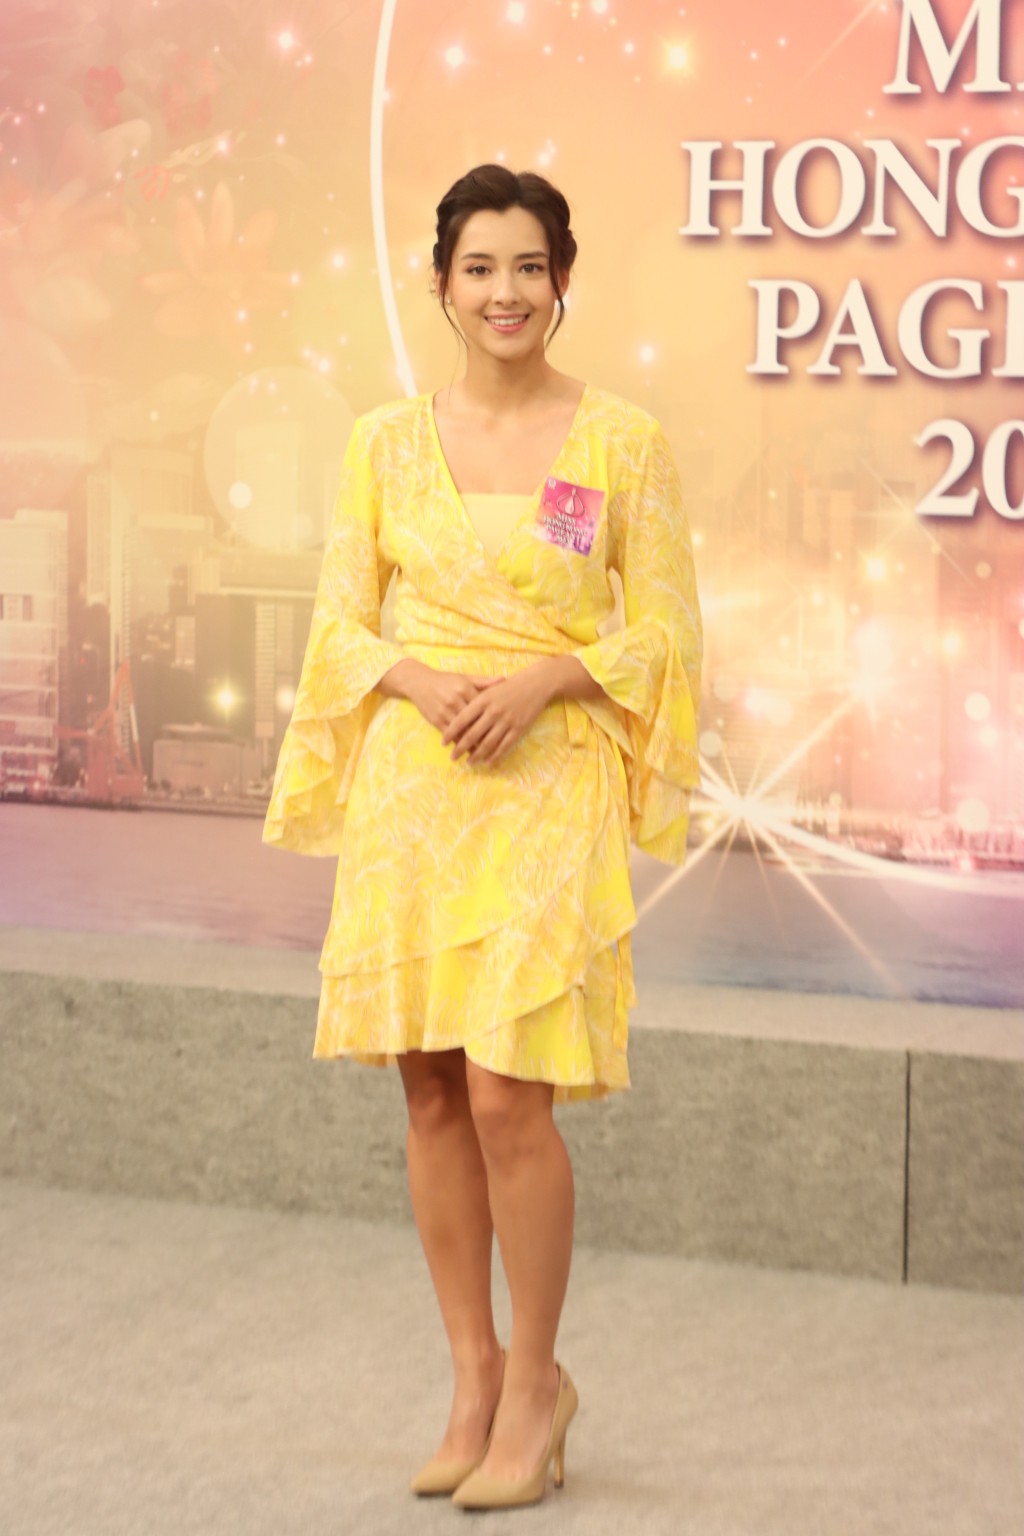 谢嘉怡是《2020年度香港小姐竞选》冠军暨最上镜小姐。